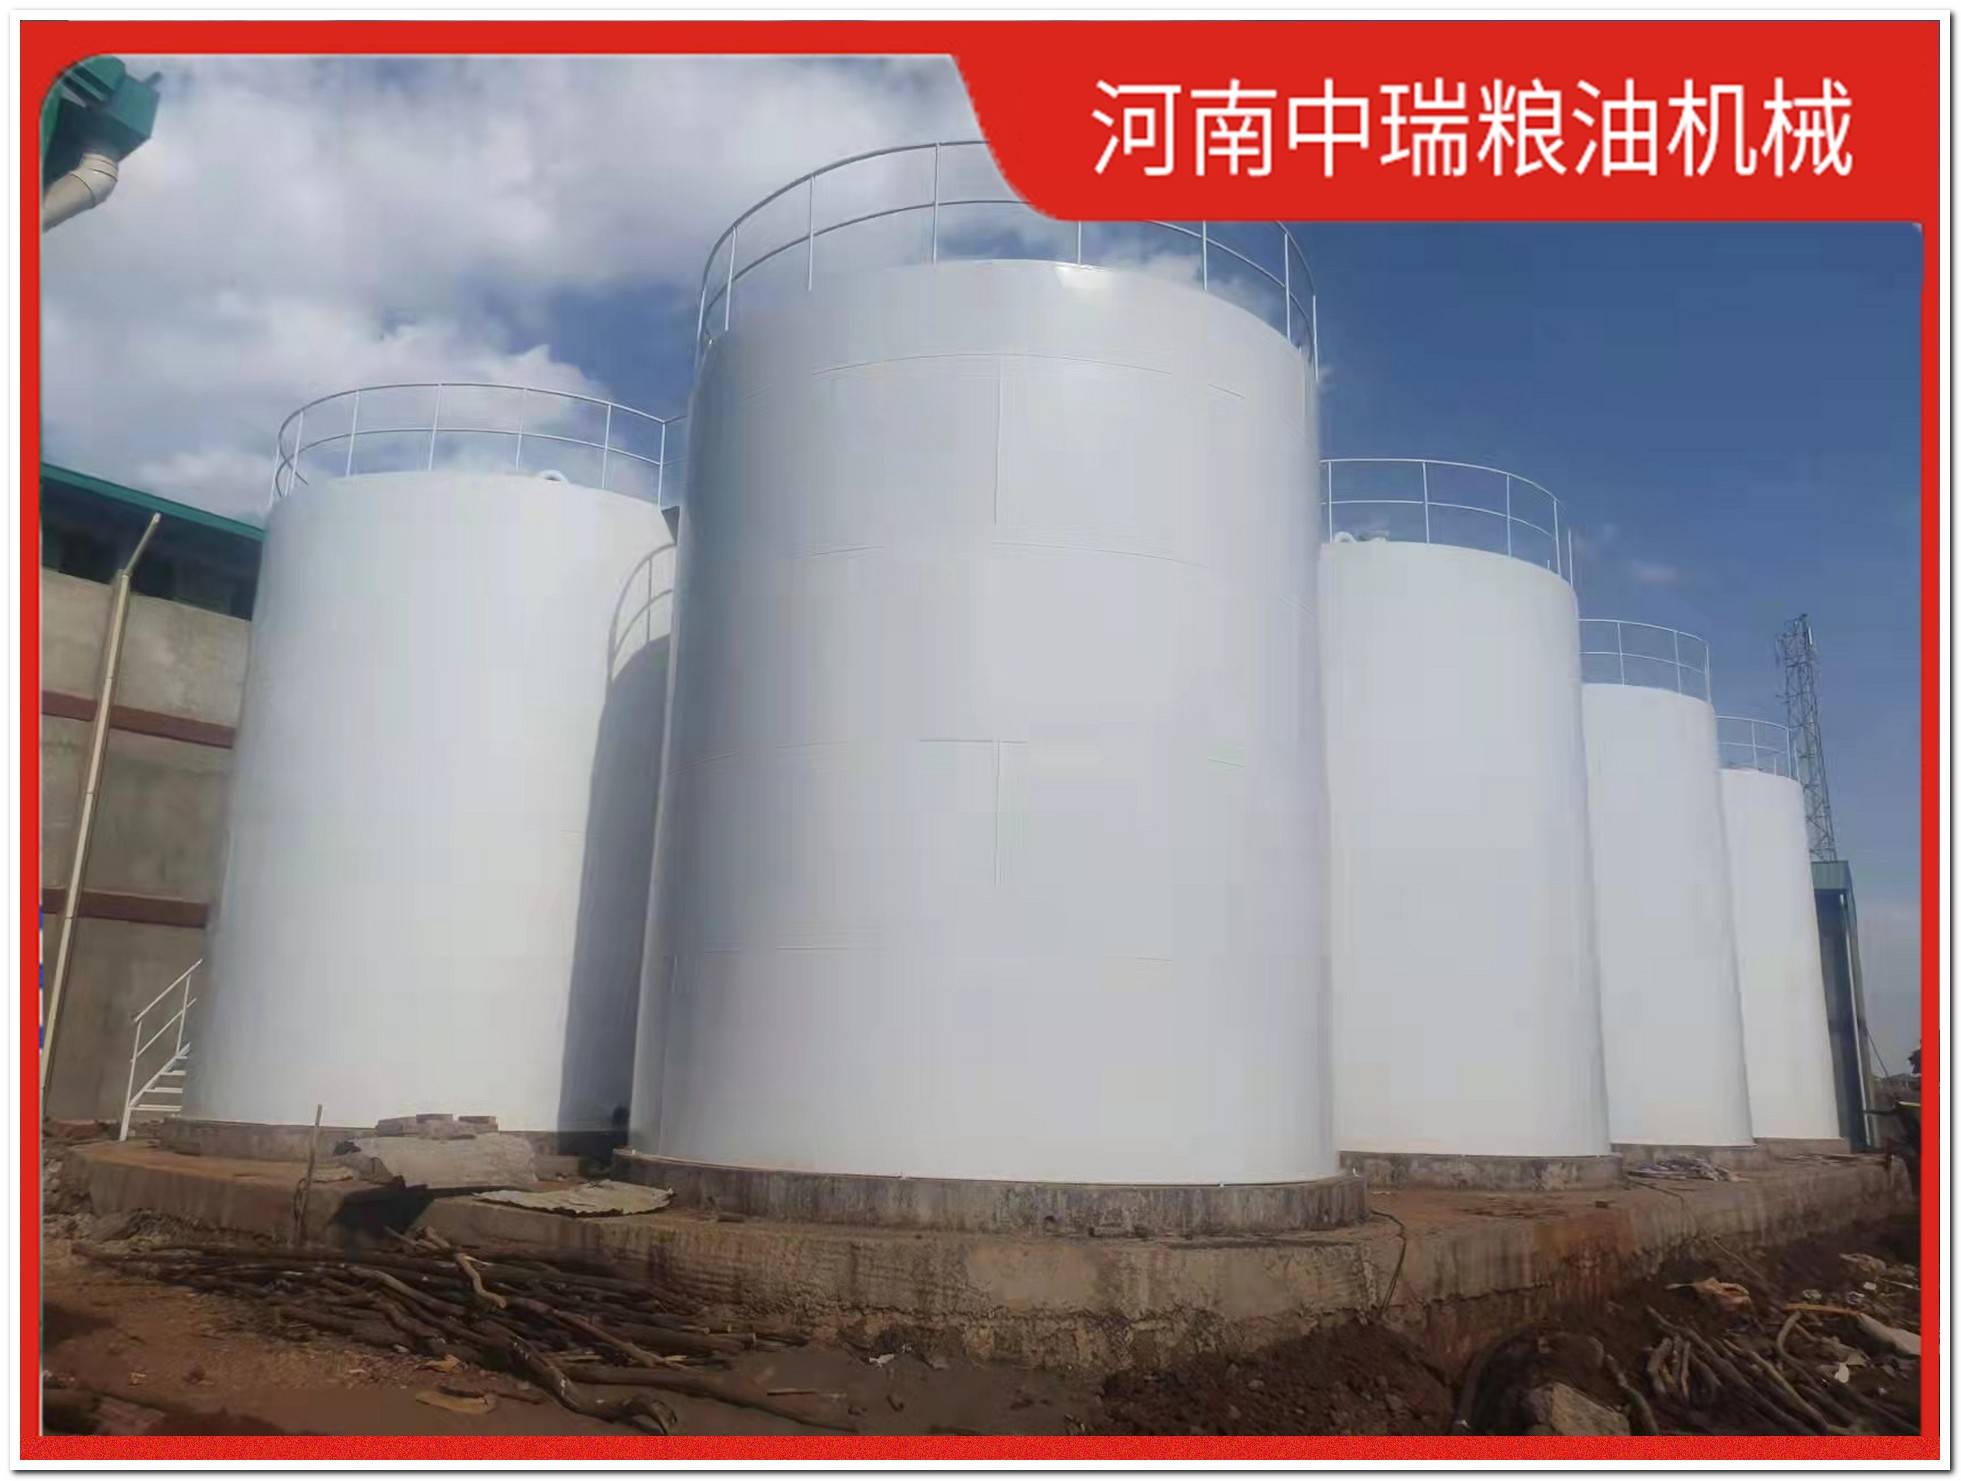 火锅牛油精炼生产线价格清单明细,动物油生产线设备现货供应批发厂家